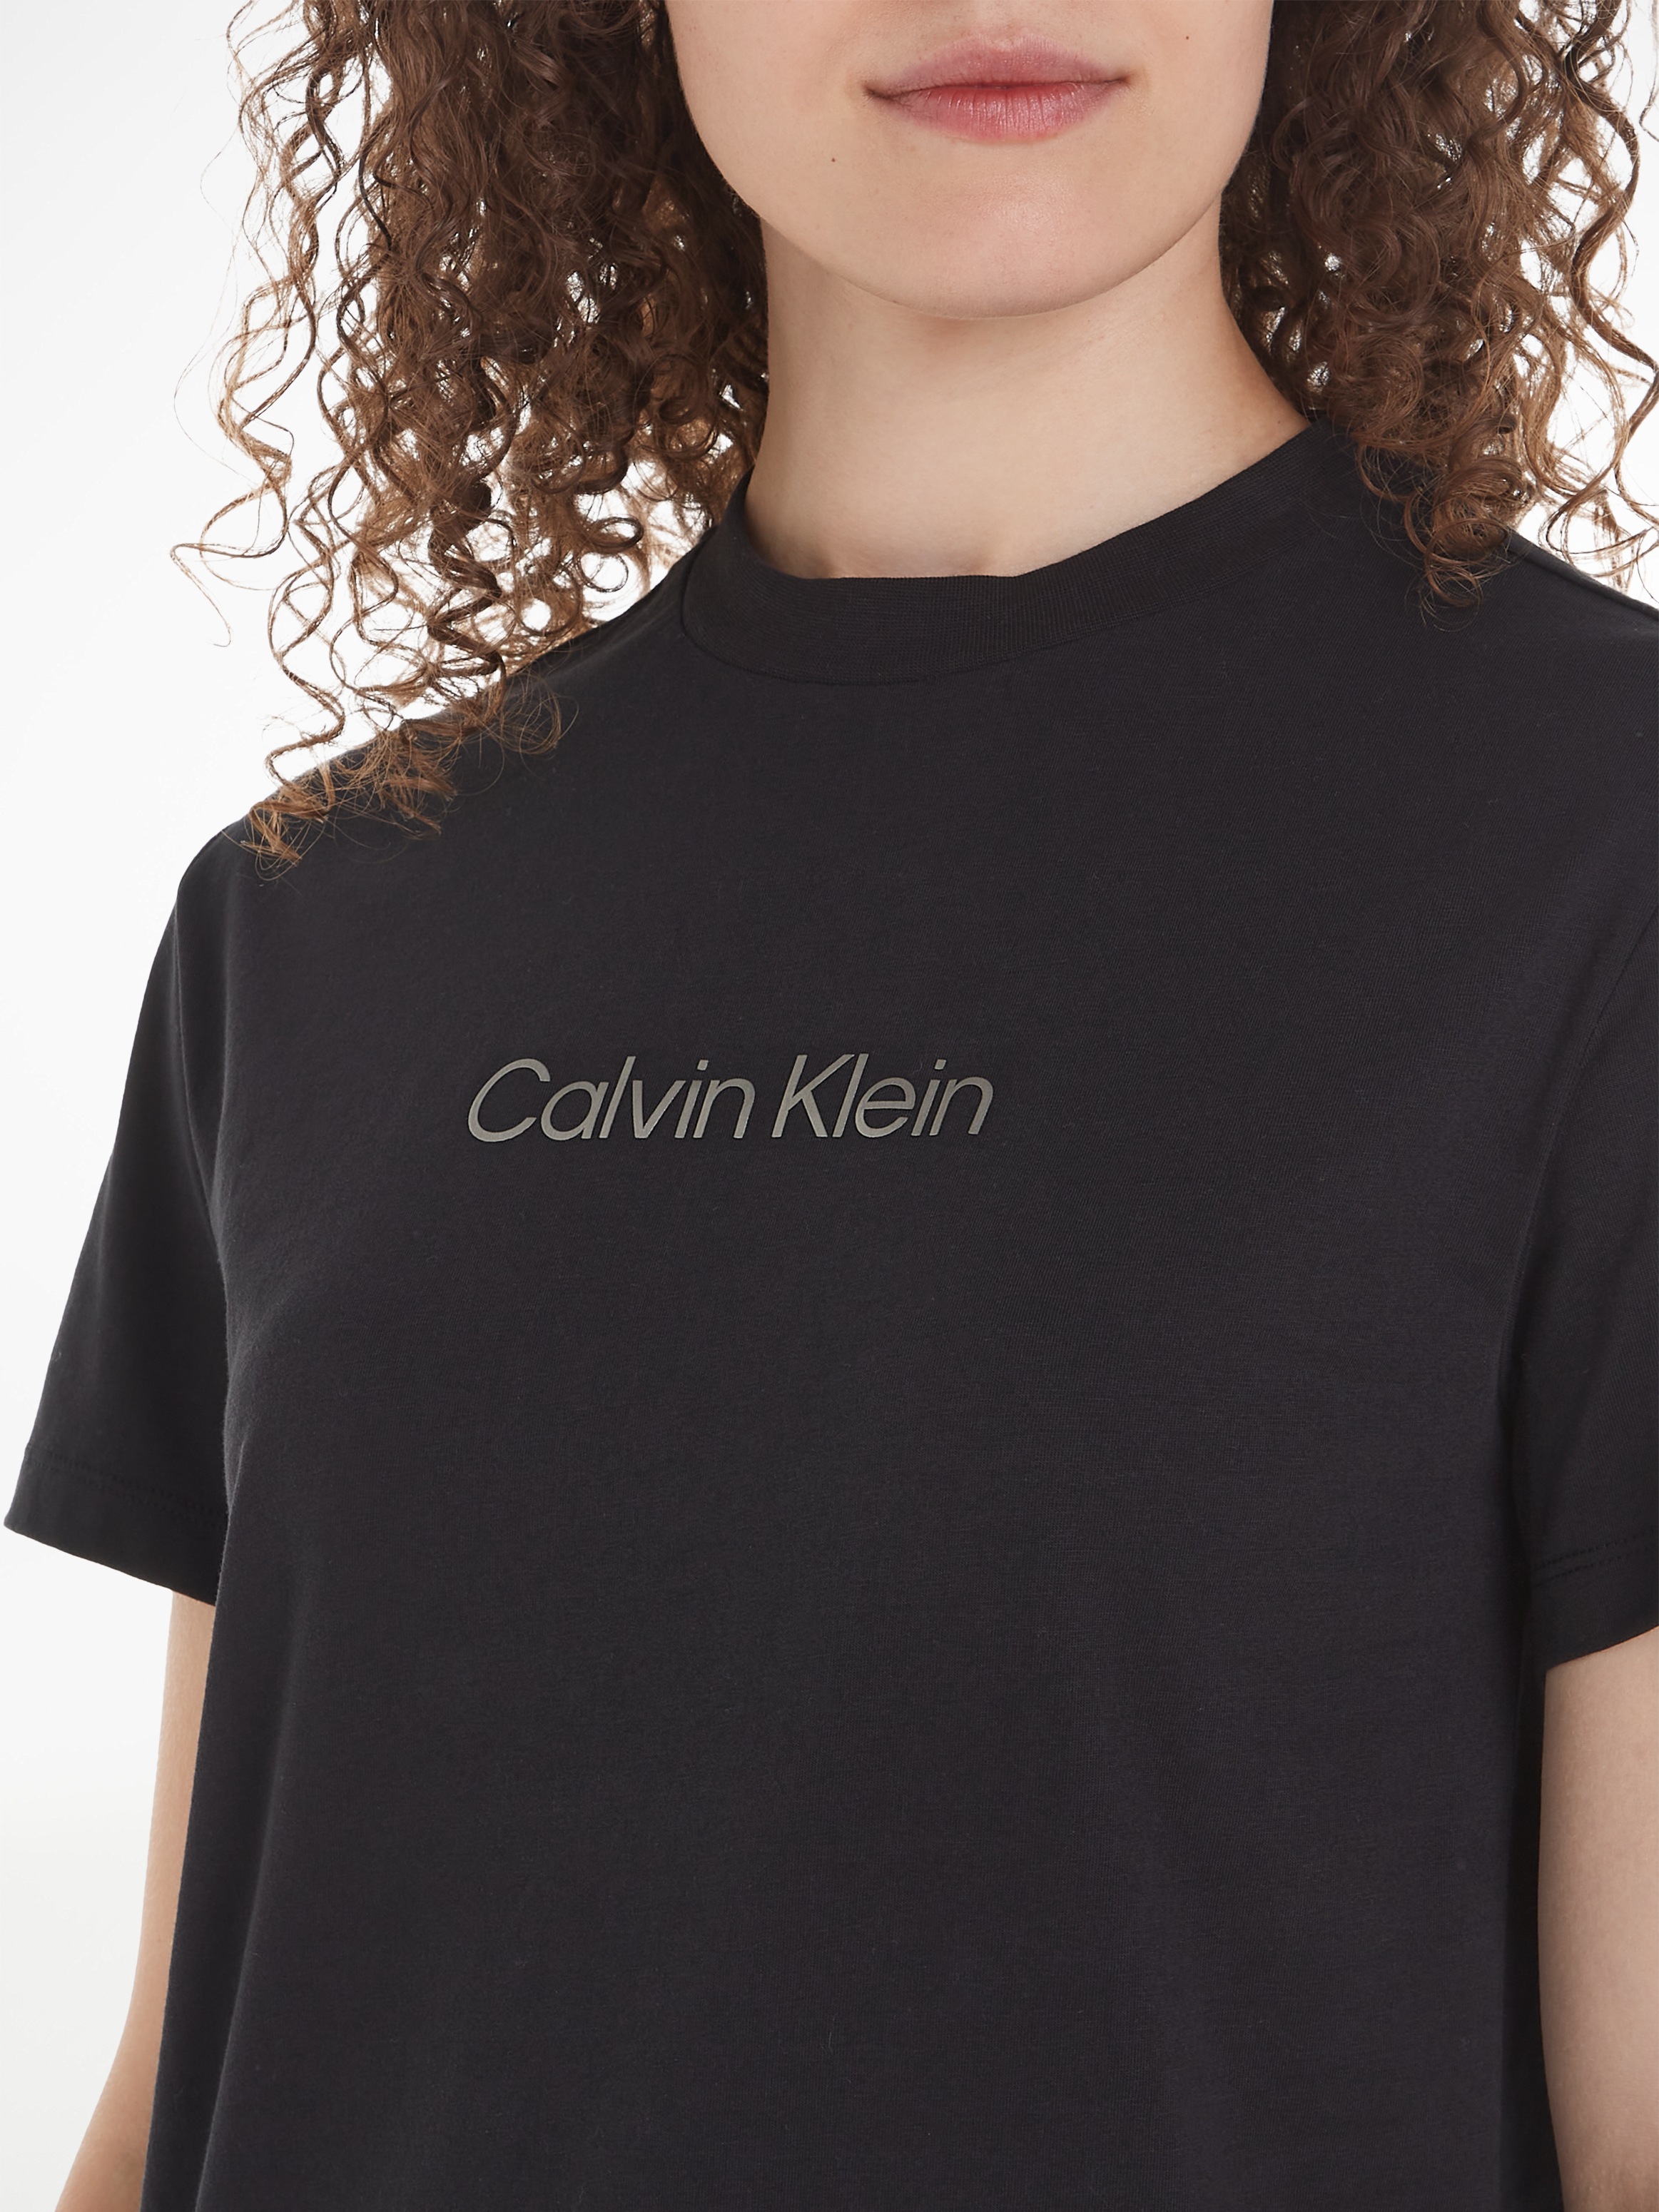 Schweiz auf der Jelmoli-Versand T-SHIRT«, online LOGO T-Shirt bei Klein mit Klein Brust Calvin Calvin METALLIC shoppen Print »HERO